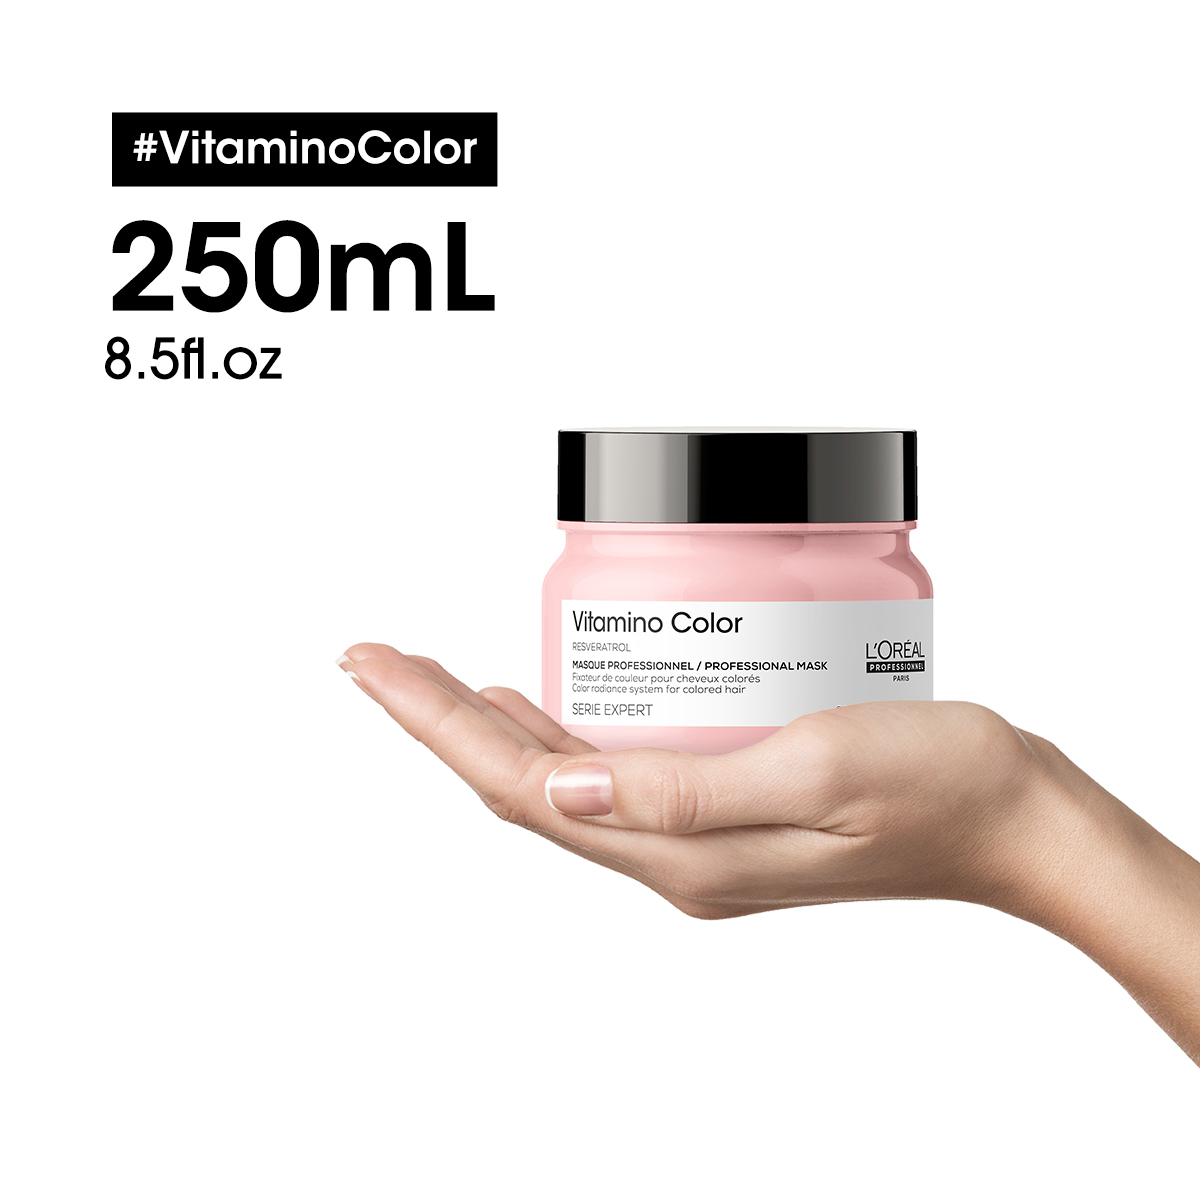 L’Oréal Professionnel Paris Serie Expert Vitamino Color Maske 250ml